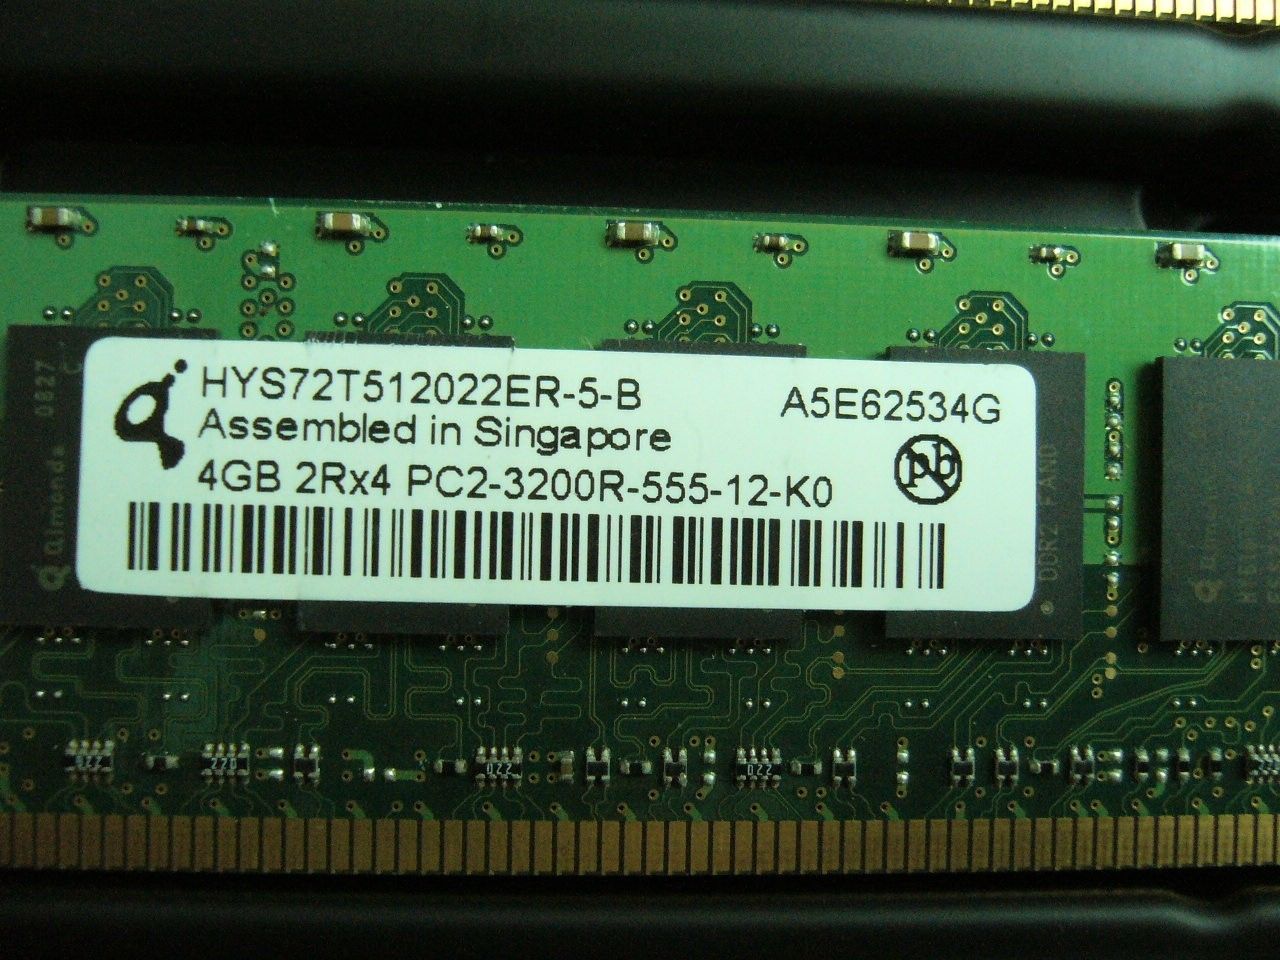 QTY 1x 4GB PC2-3200R DDR2 400MHz ECC Registered Memory HP P/N 345115-061 - zum Schließen ins Bild klicken